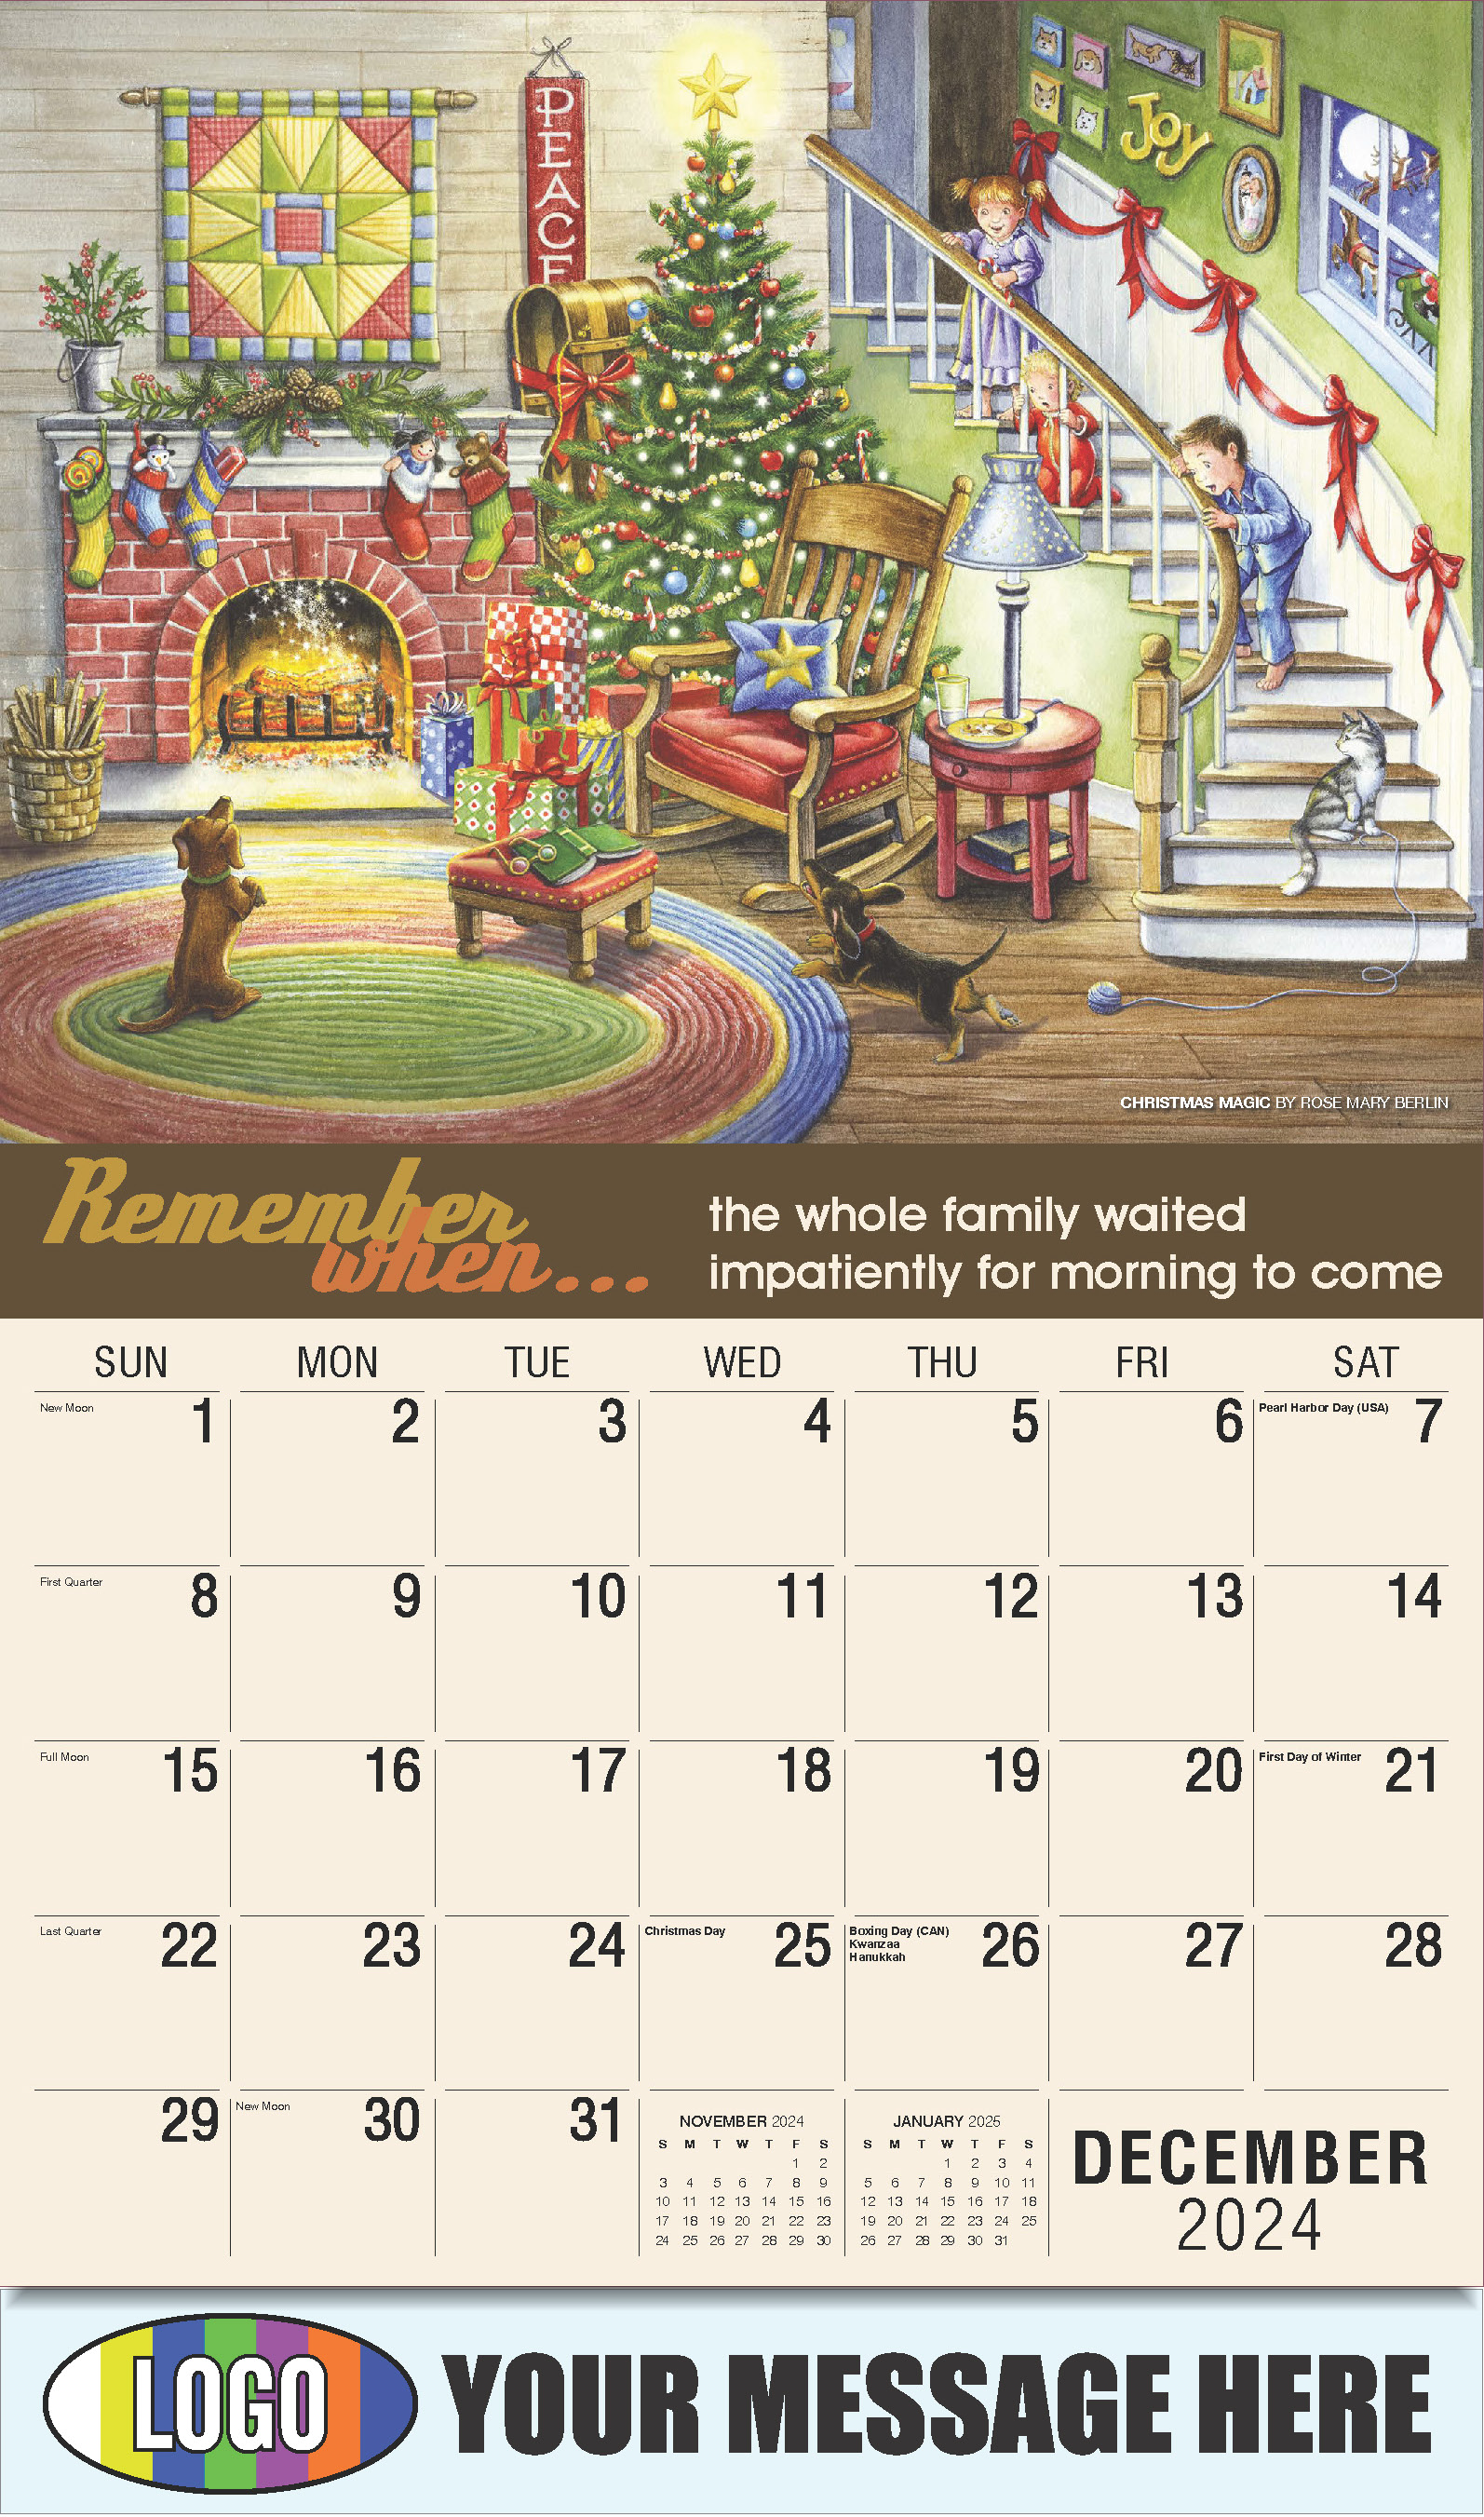 Remember When 2025 Business Advertising Calendar - December_a